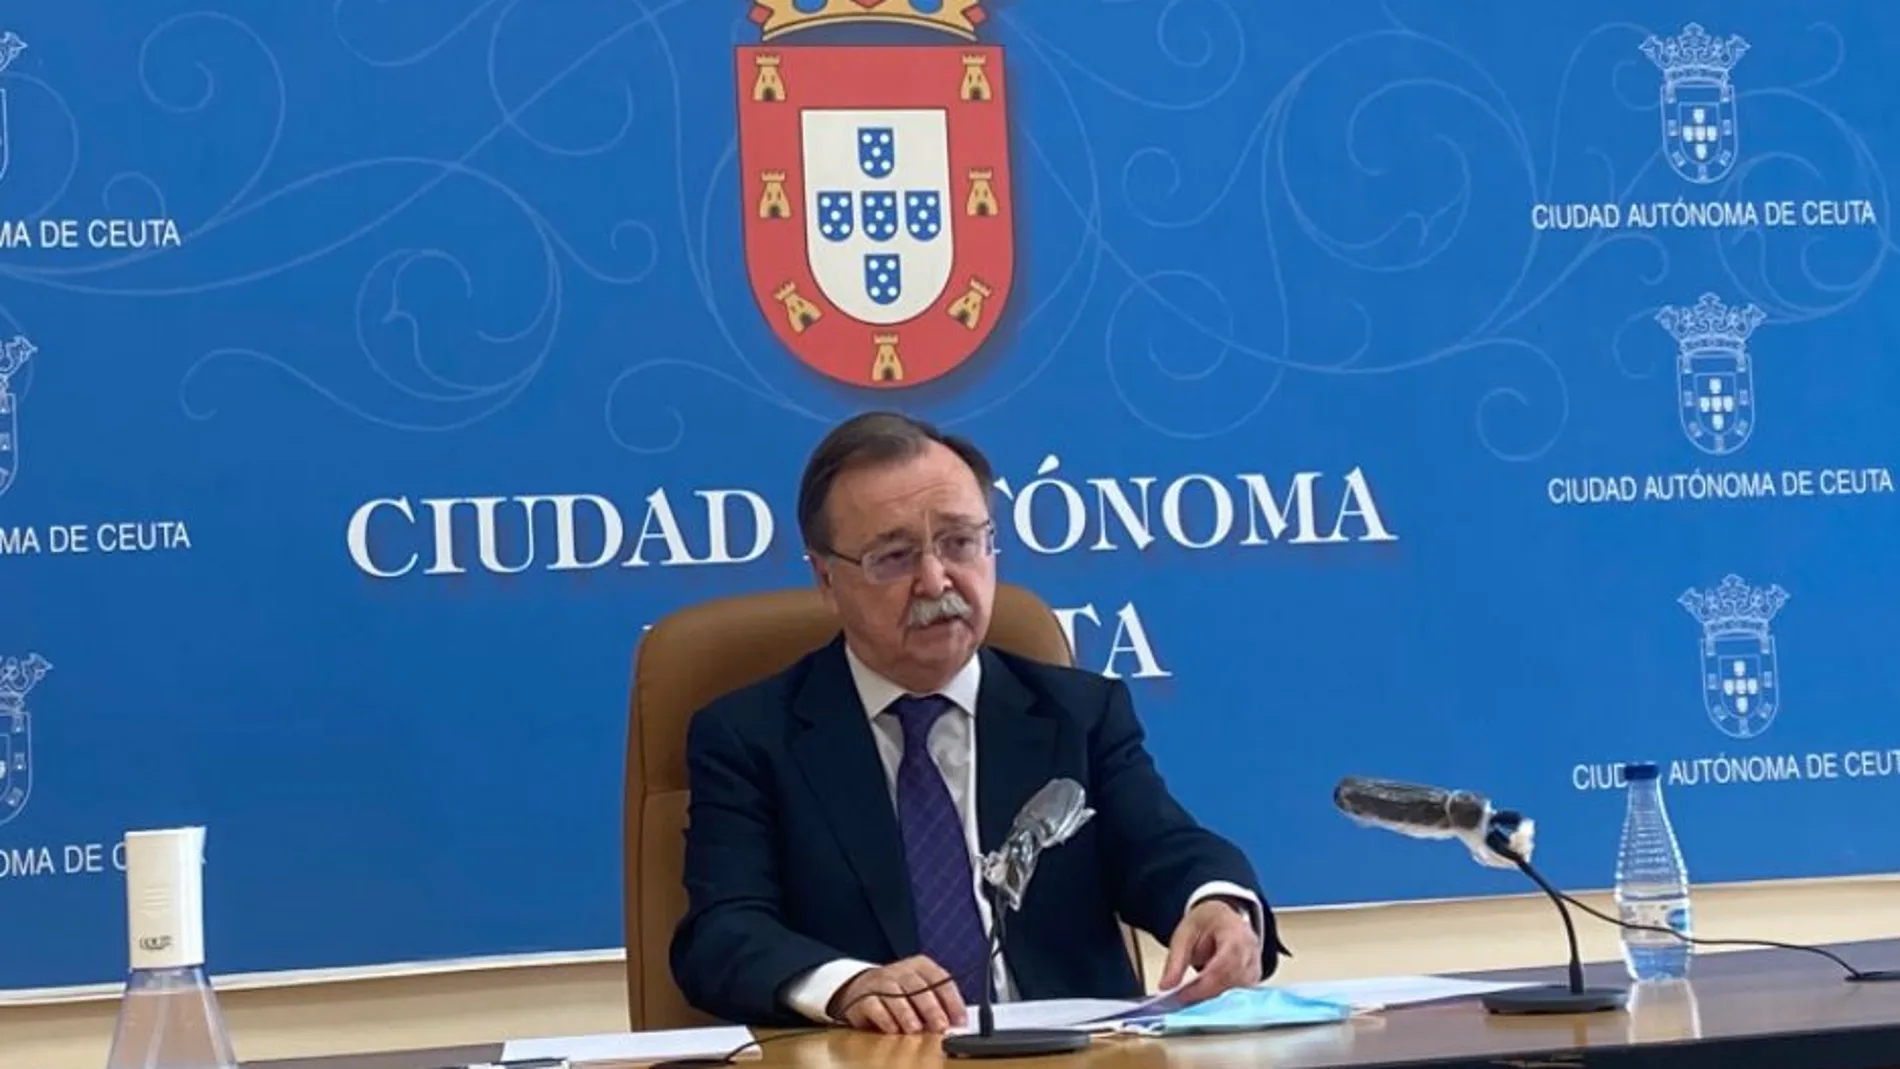 Juan Vivas, Presidente de Ceuta